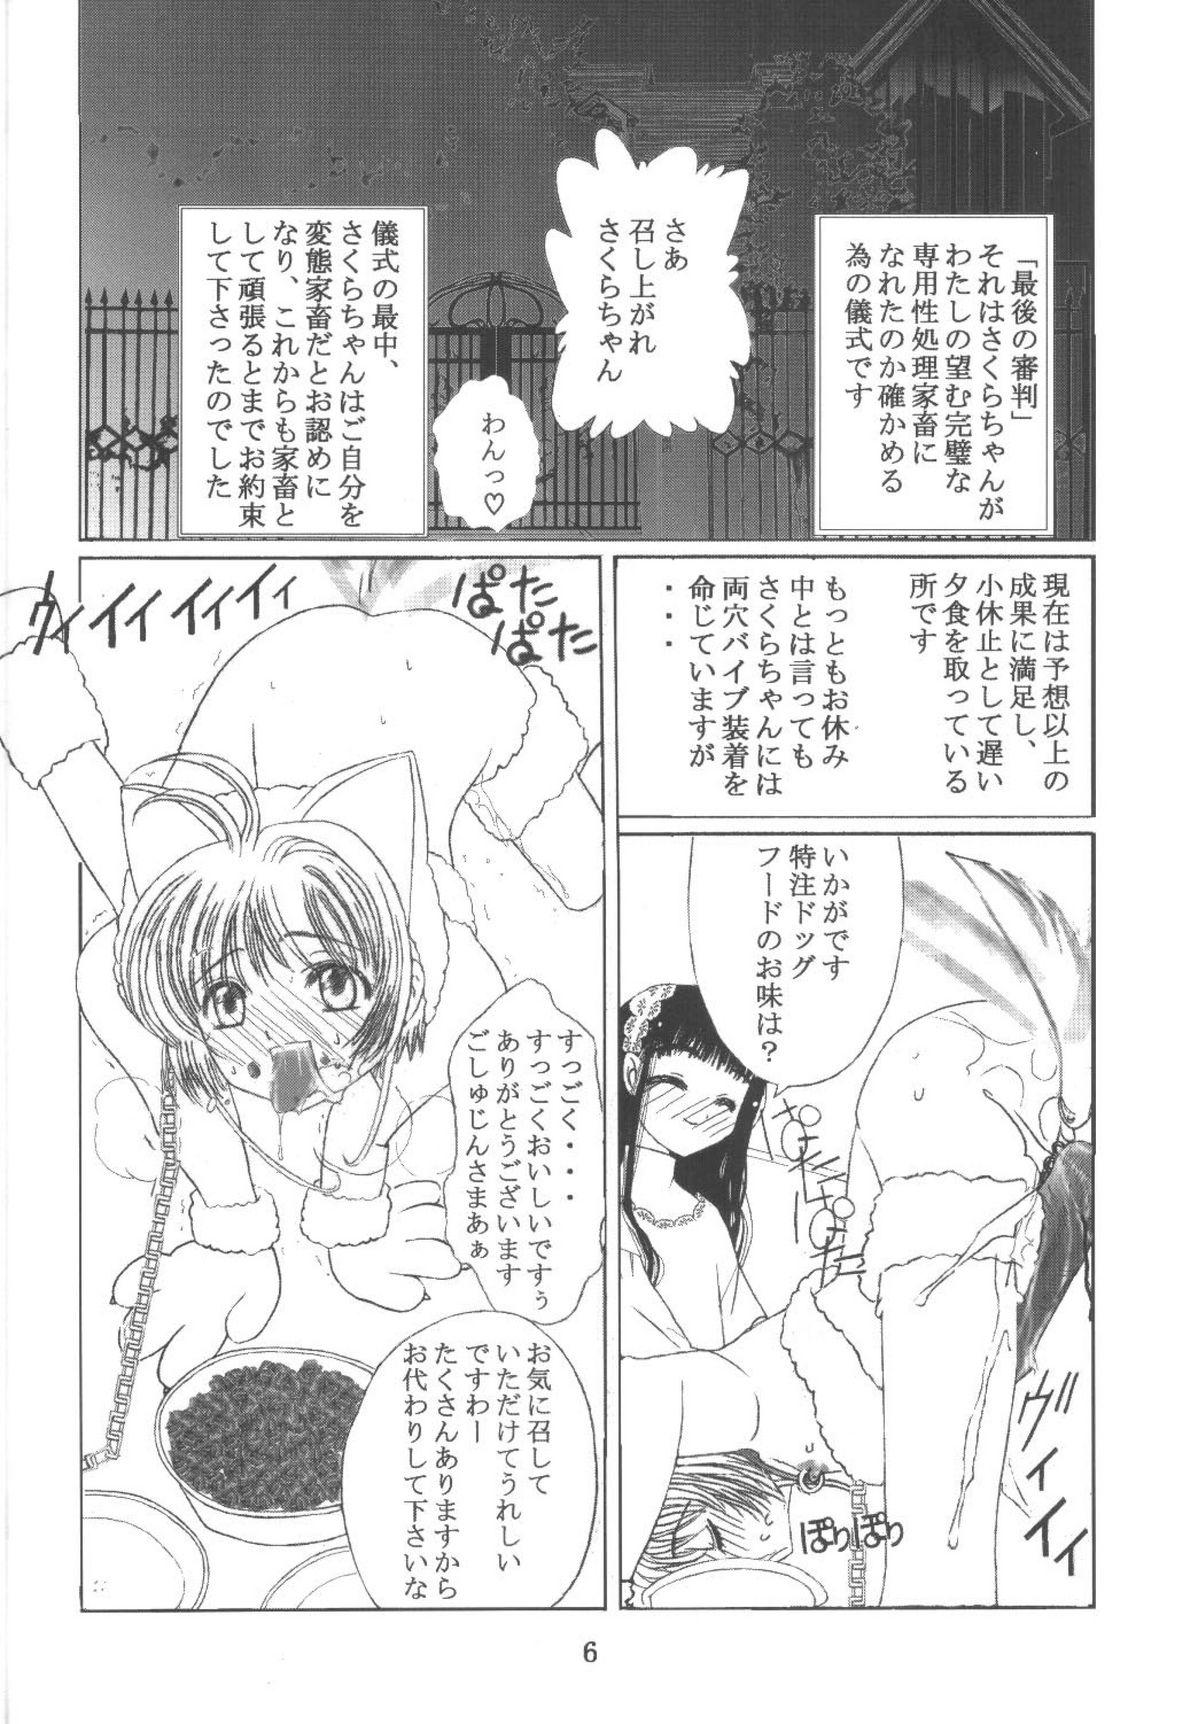 Cruising Kuuronziyou 11 Sakura-chan de Asobou 6 - Cardcaptor sakura Grosso - Page 6